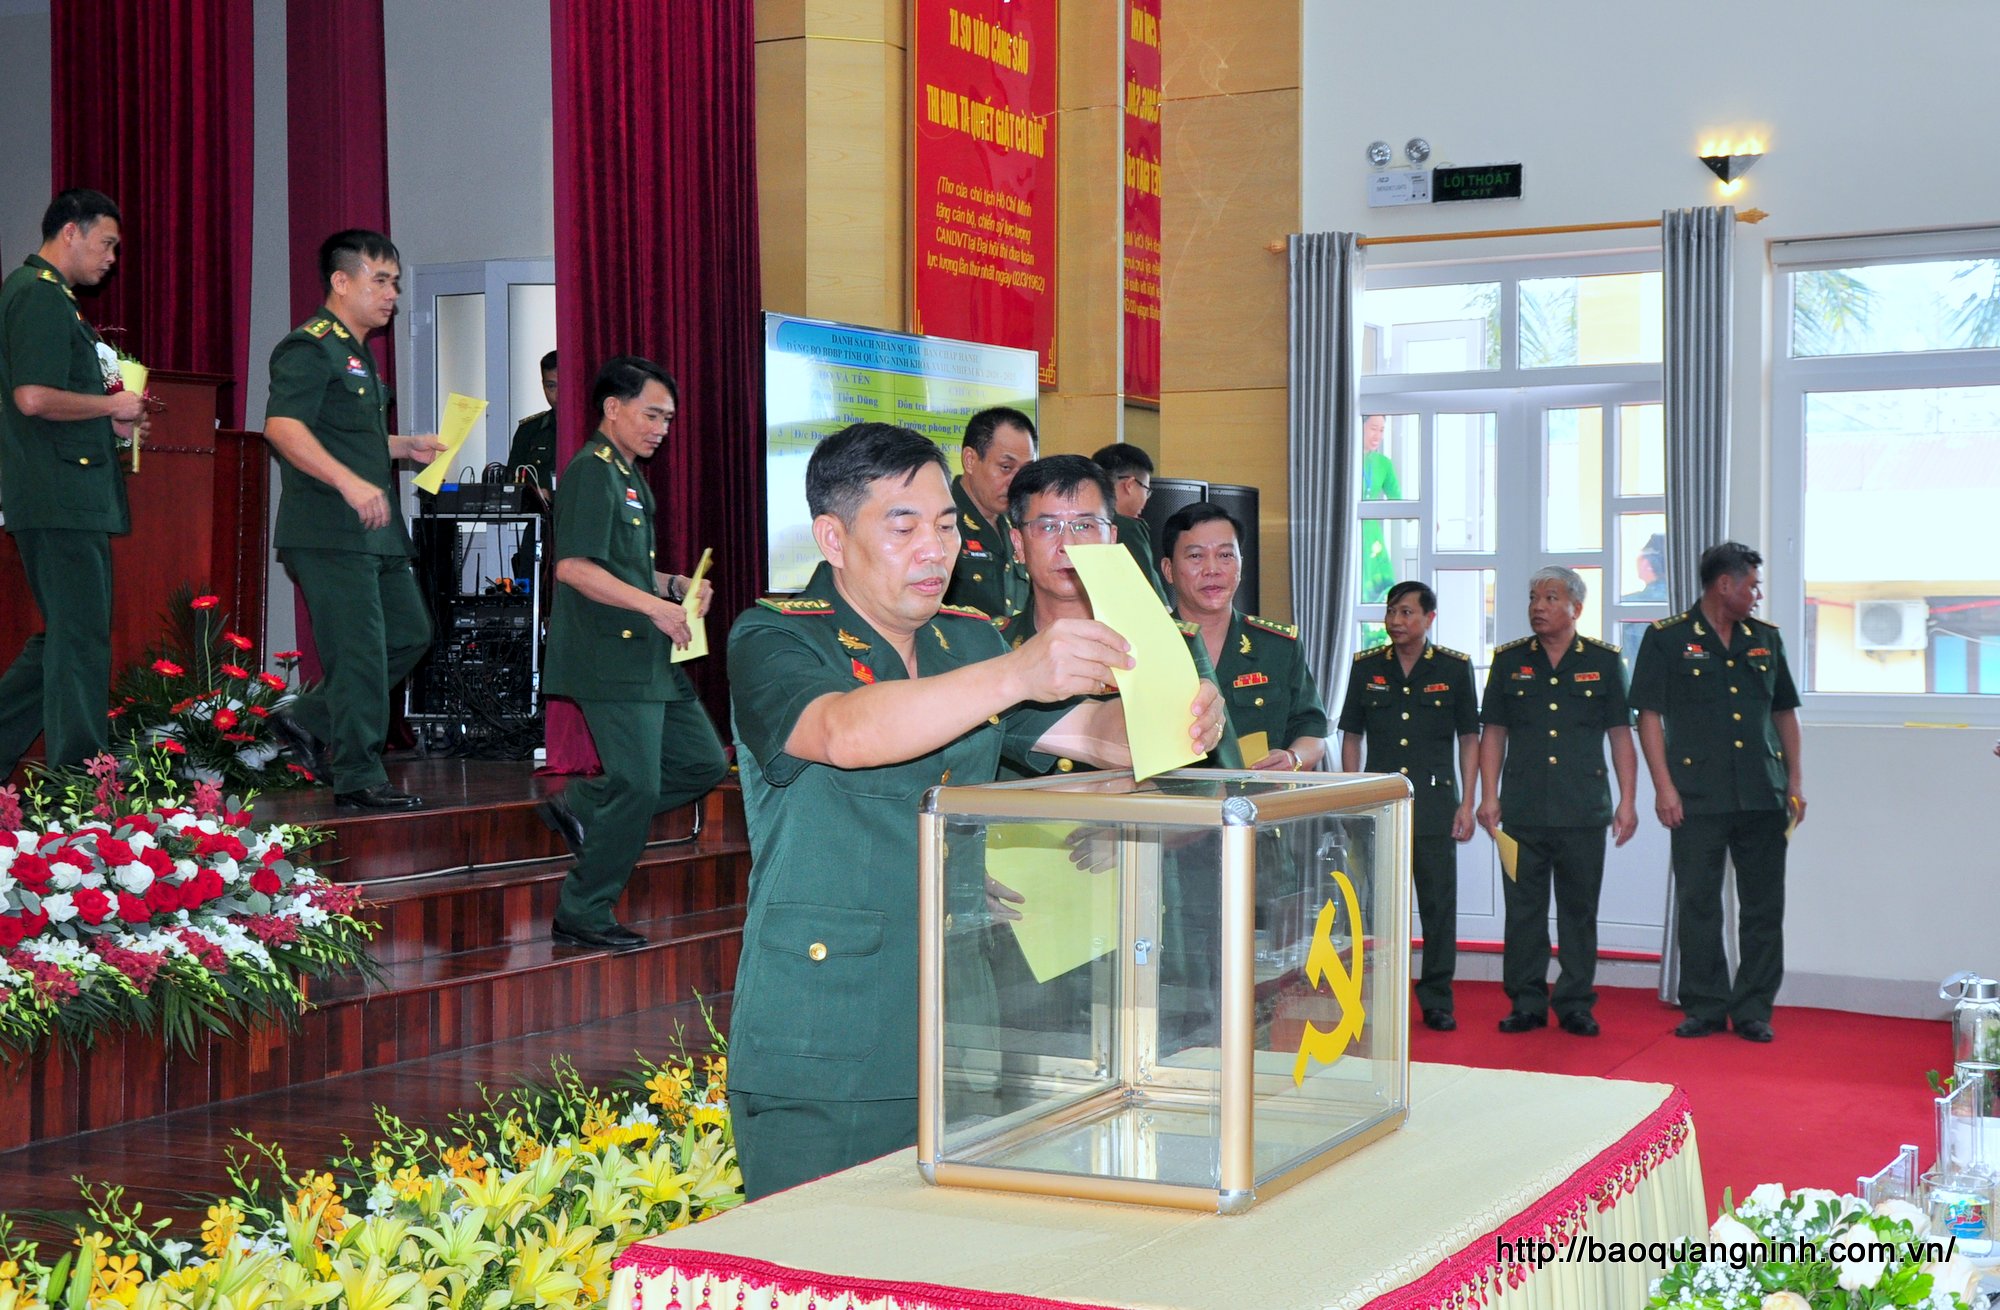 Đại hội Đảng bộ BĐBP tỉnh Quảng Ninh khóa XVIII, nhiệm kỳ 2020-2025 là Đảng bộ BĐBP cấp tỉnh duy nhất trong cả nước bầu trực tiếp Bí thư tạ Đại hội 